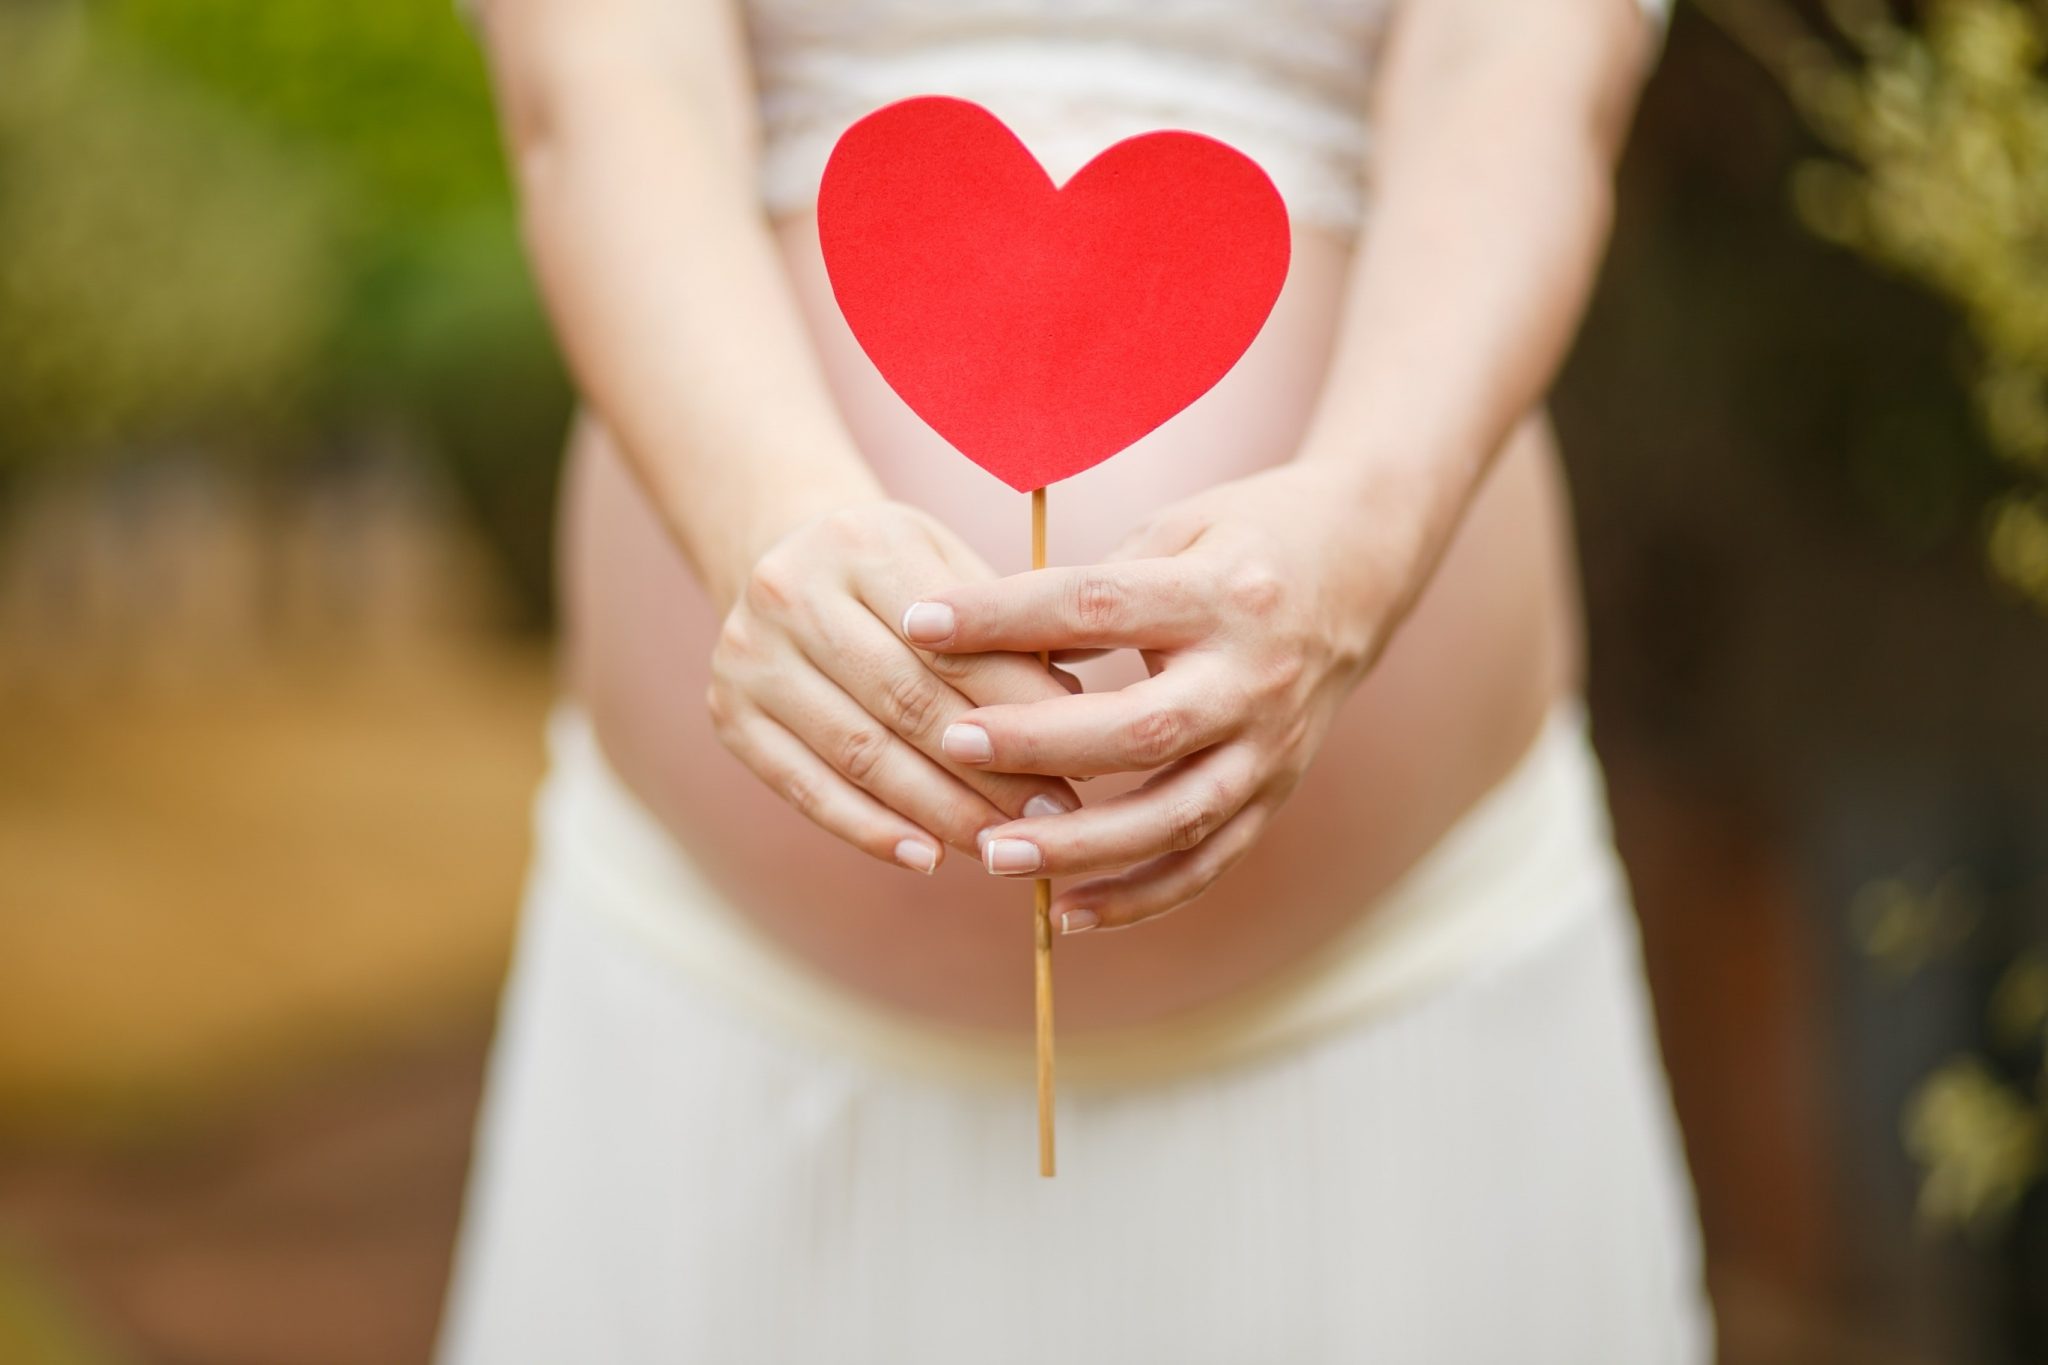 דיקור סיני לפוריות, הריון ו IVF